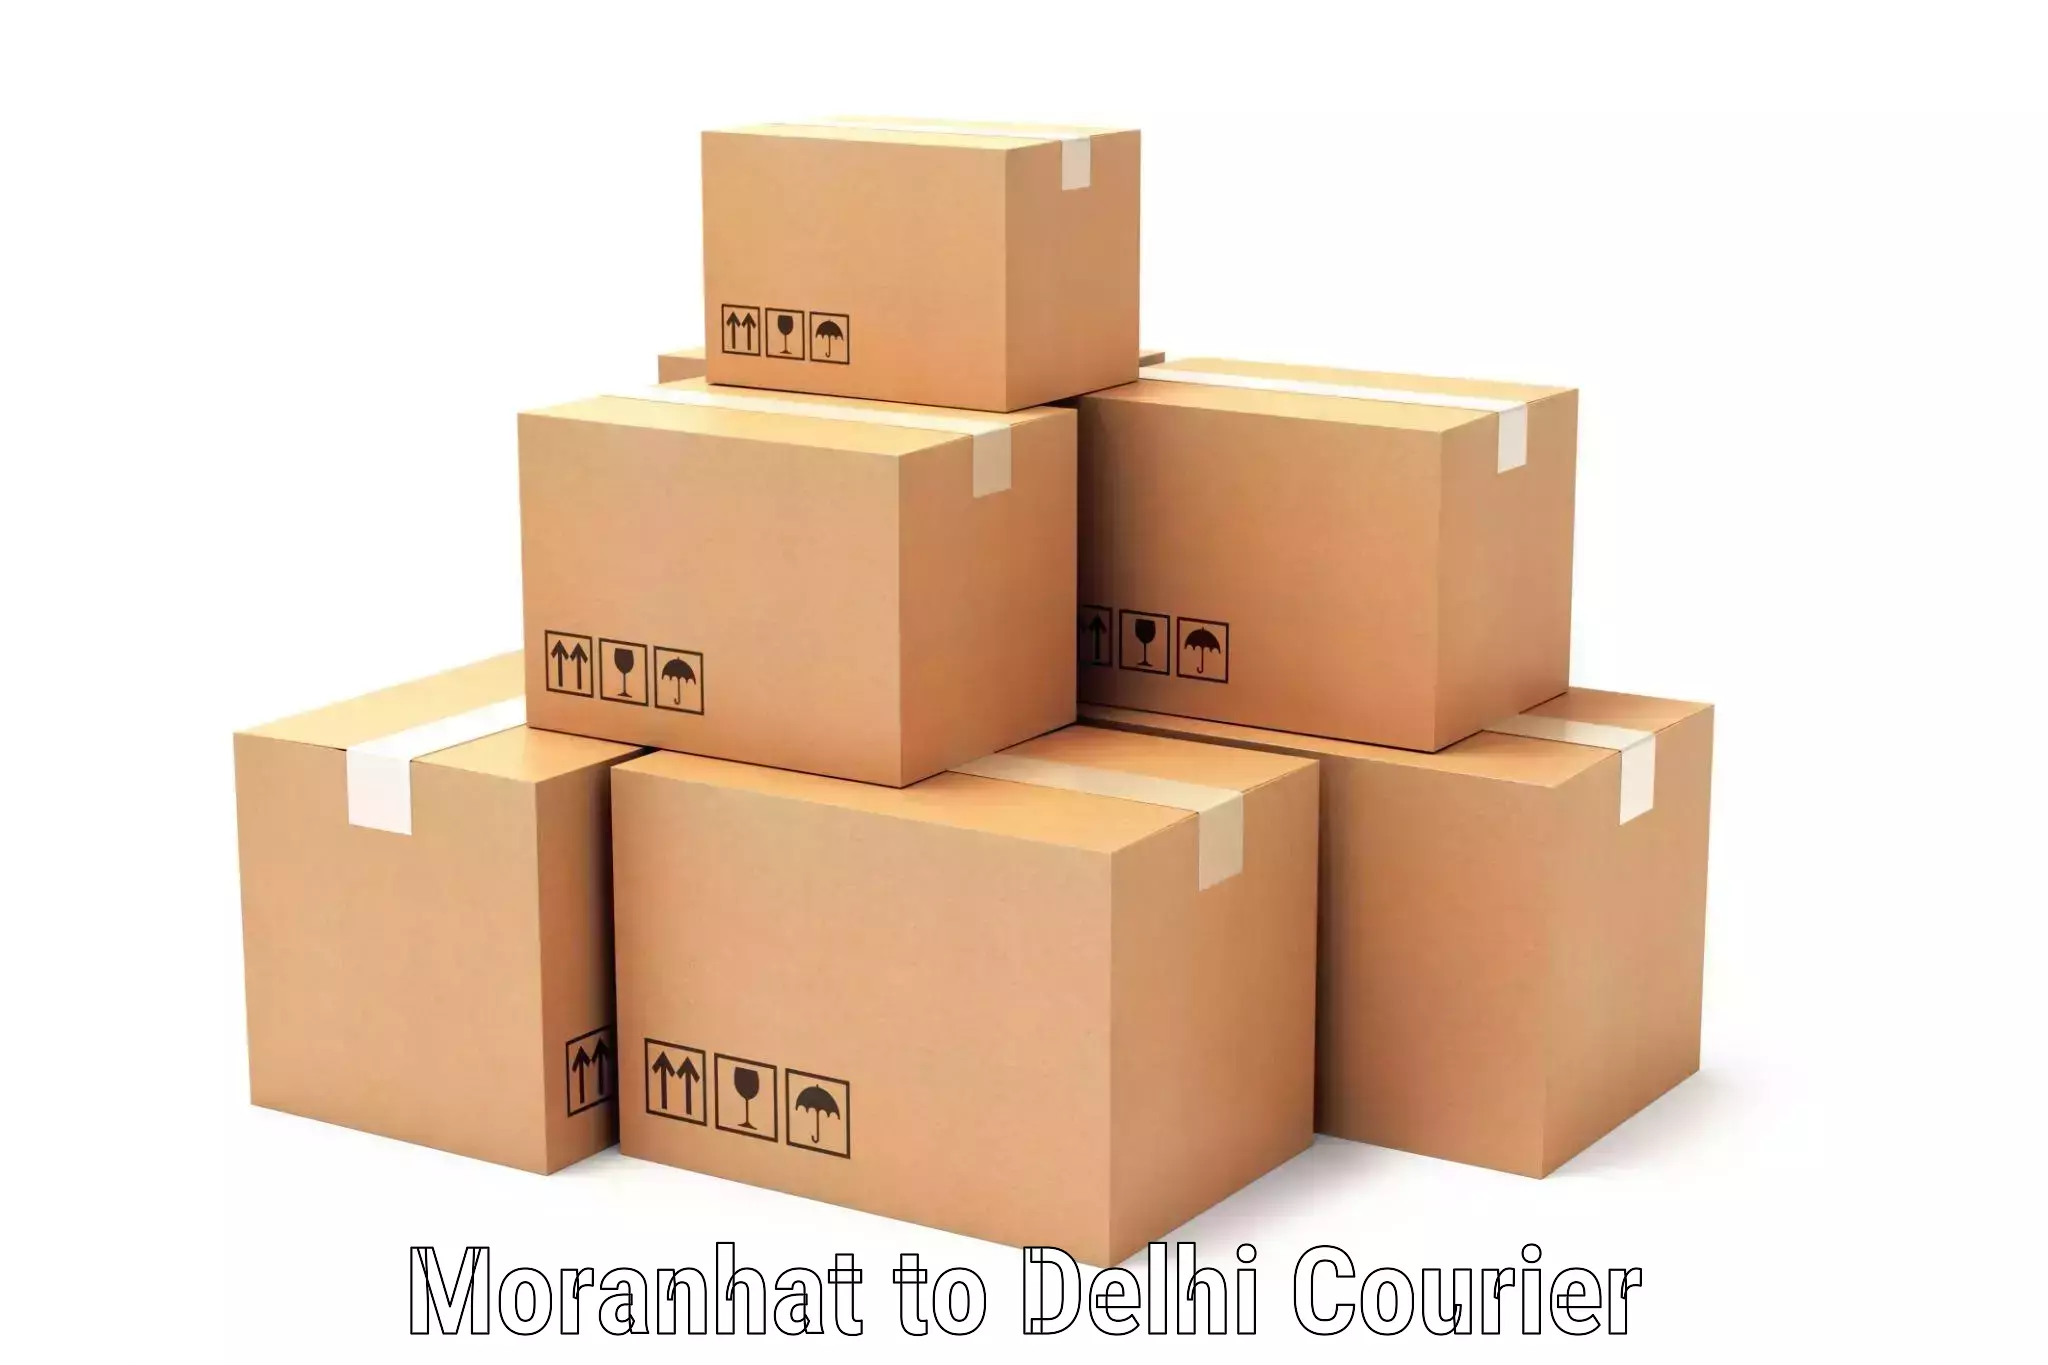 Comprehensive parcel tracking in Moranhat to IIT Delhi